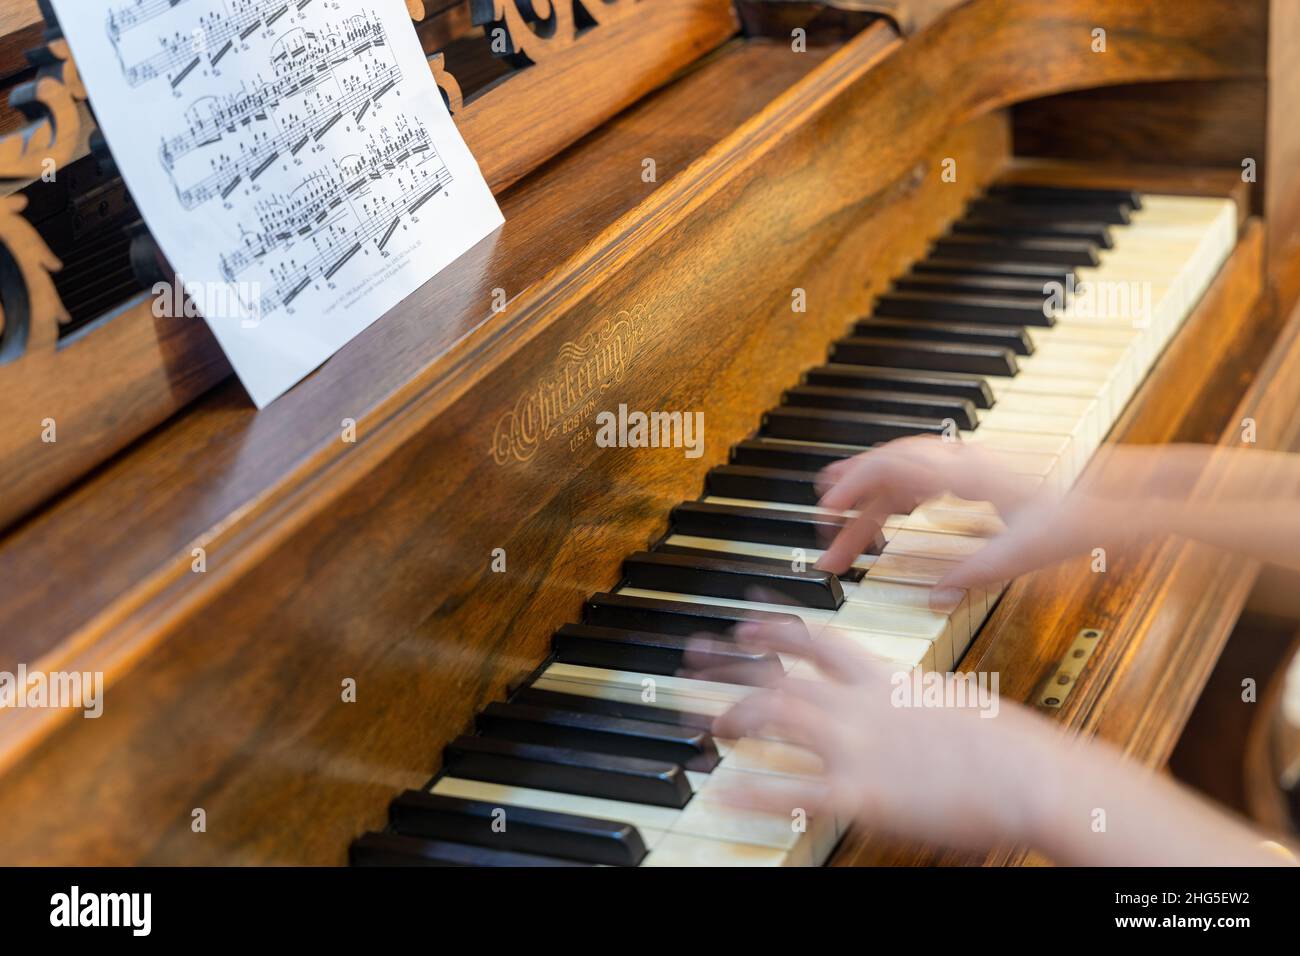 Nahaufnahme eines jungen Mädchens, das ein antikes, seltenes nChickering & Sons Square Grand Klavier spielt, das 1867 mit verschwommenen Händen gebaut wurde. Stockfoto